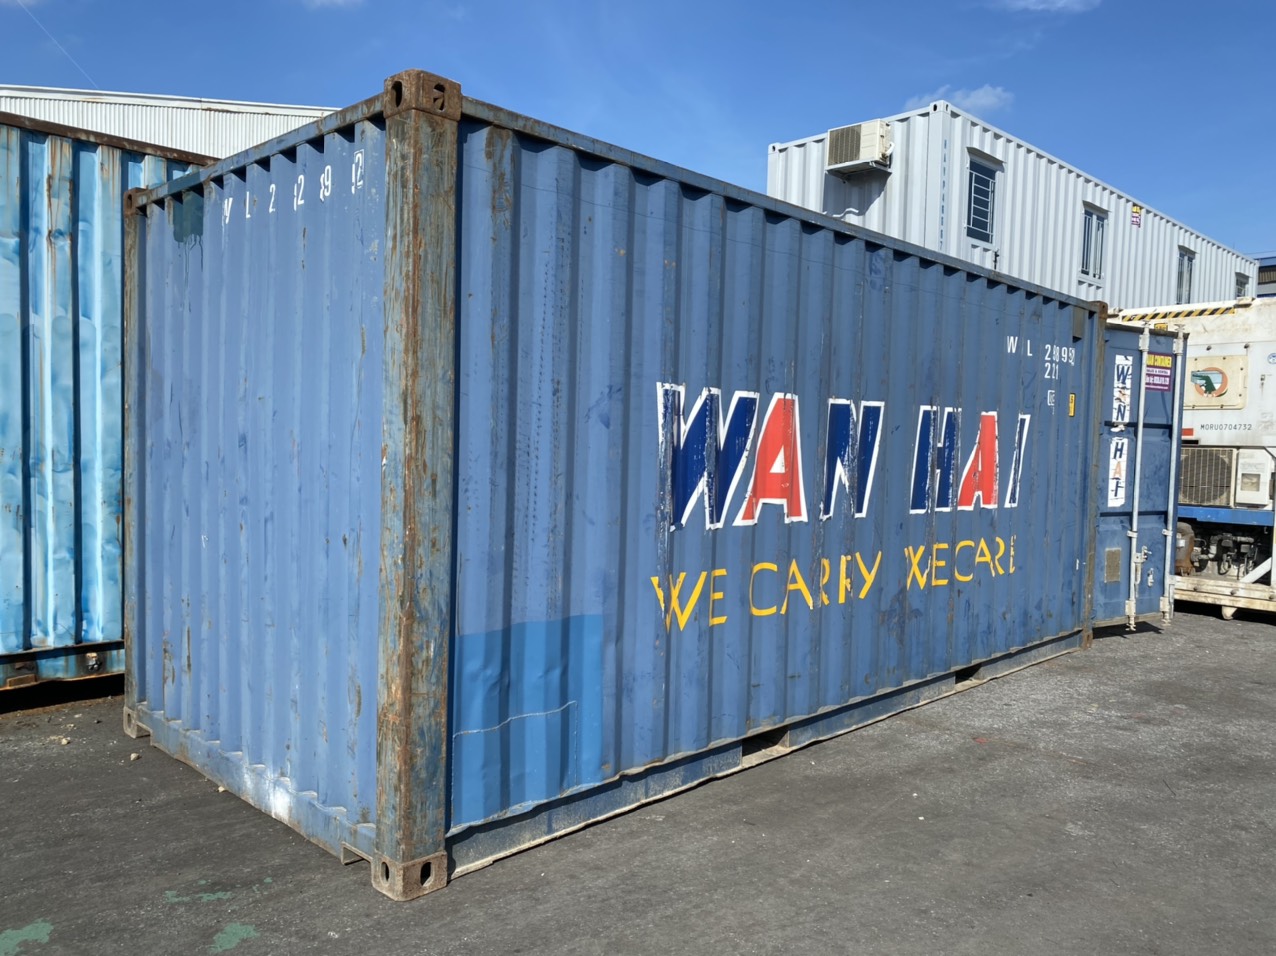 Bán và cho thuê container kho 20 feet tại Bắc Ninh Hotline : 0374 345 886 Ms Thanh